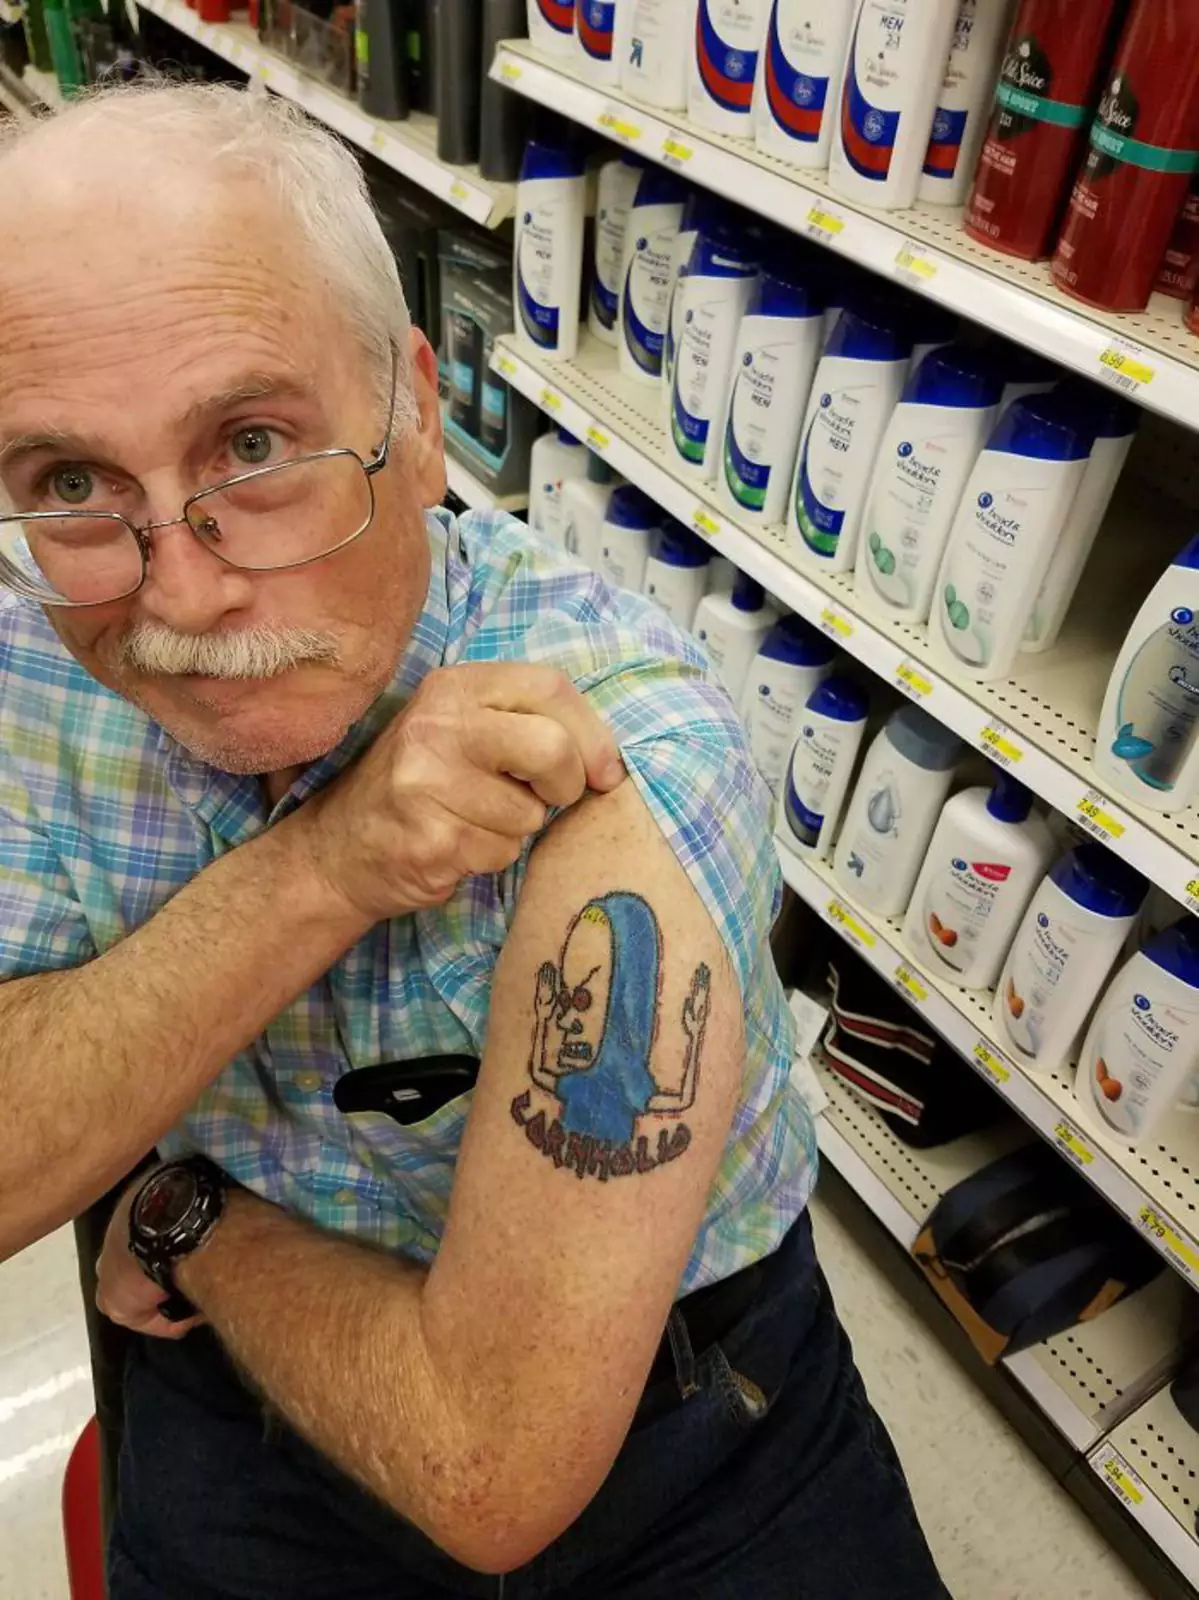 Встретил в супермаркете этого мужчину, ему 75 лет.